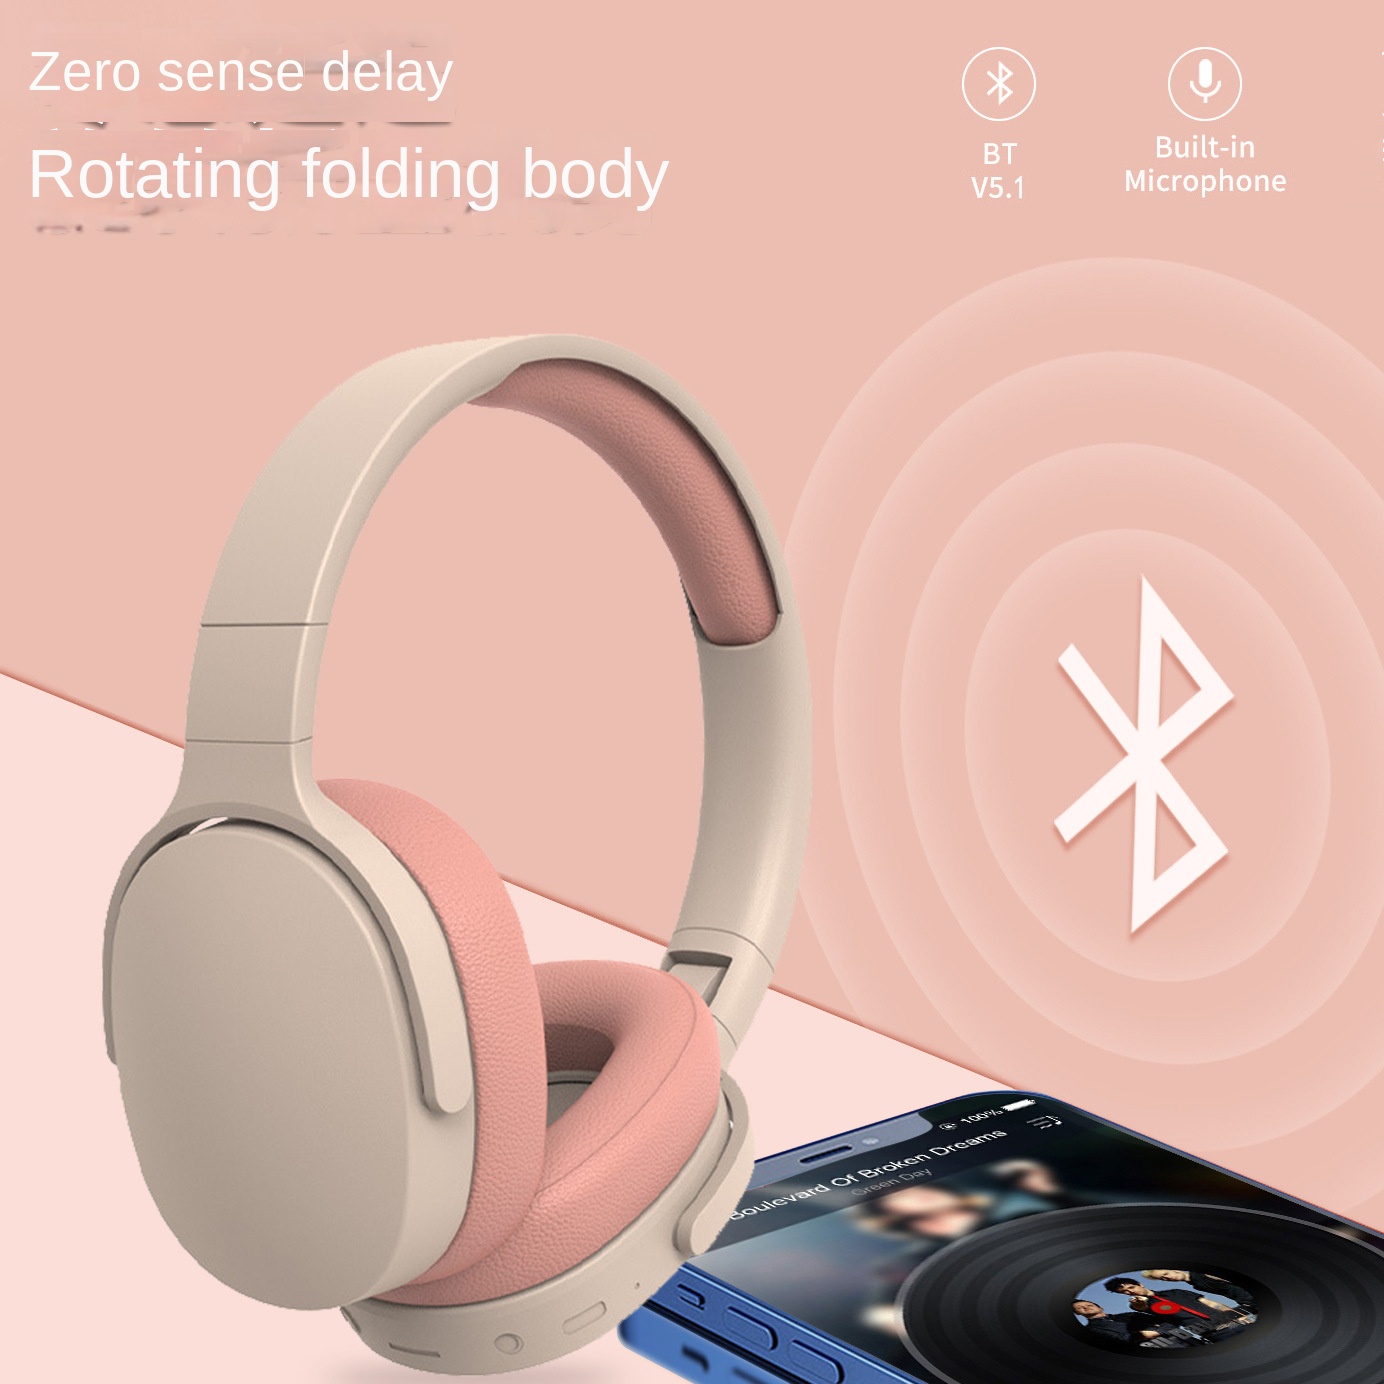 Nuova cuffia Bluetooth senza fili, auricolare Bluetooth per gioco mobile con riduzione del rumore universale montata sulla testa